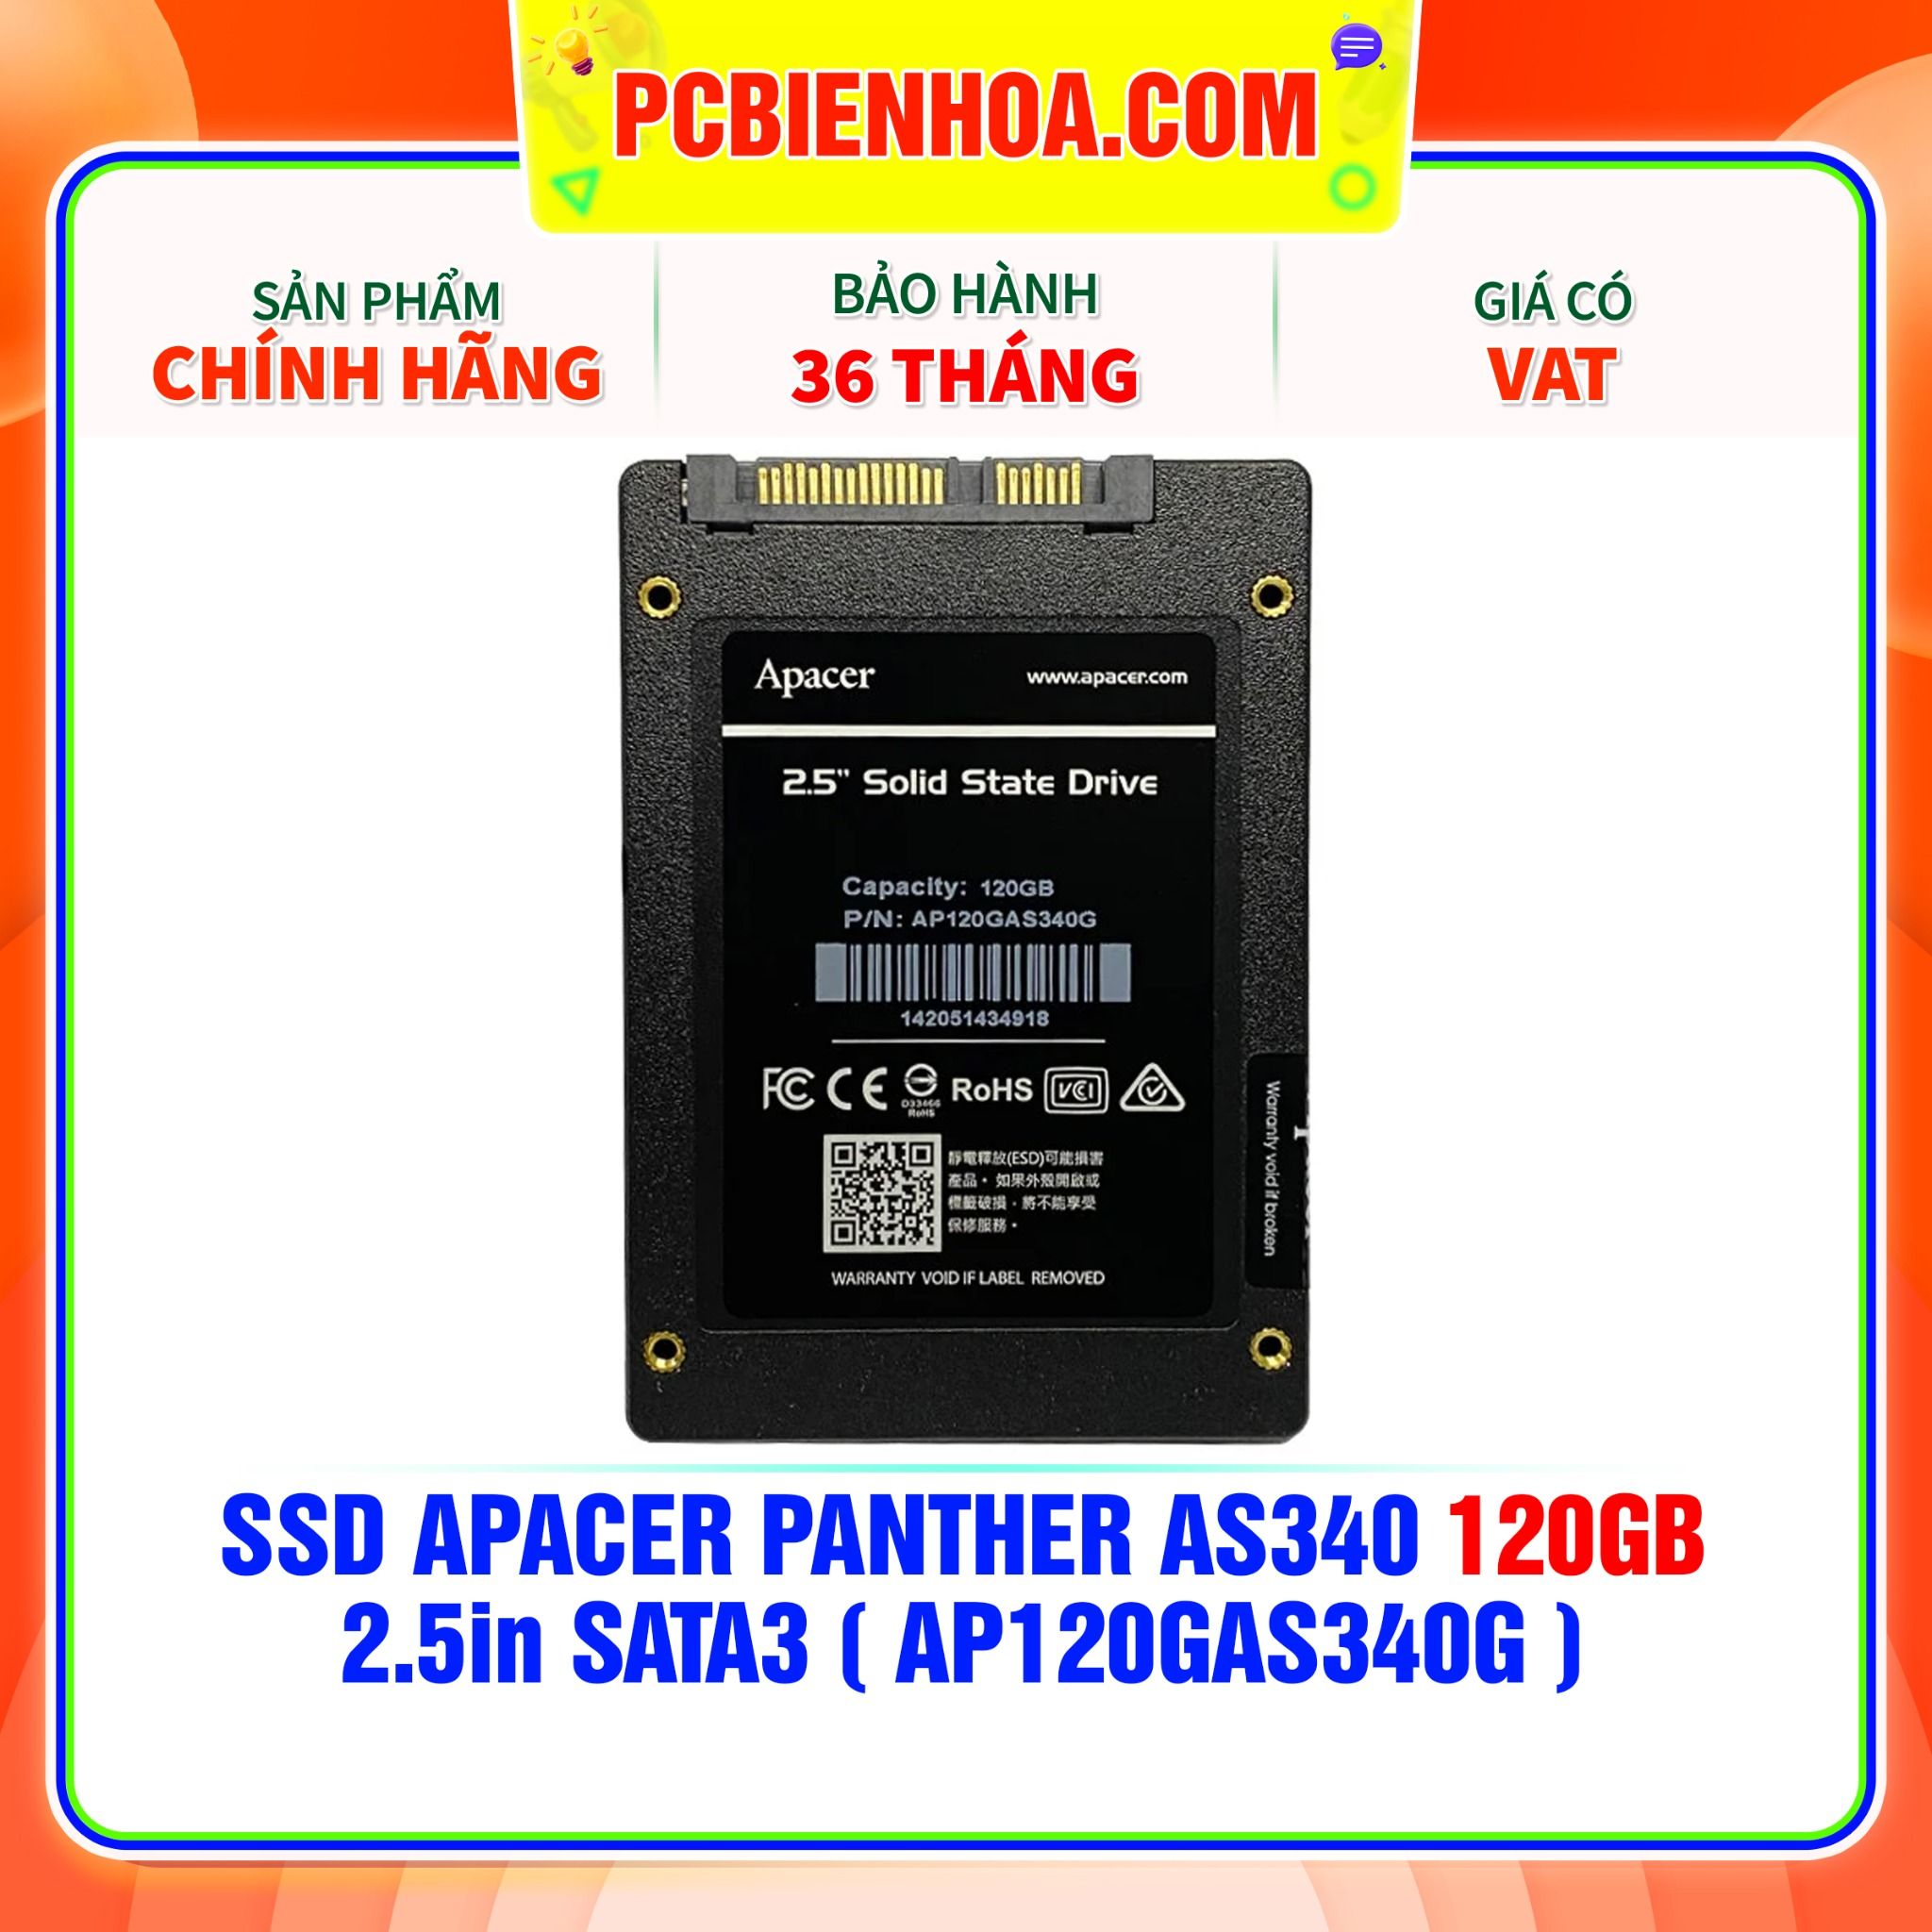  SSD APACER PANTHER AS340 120GB - 2.5in SATA3 ( AP120GAS340G ) 